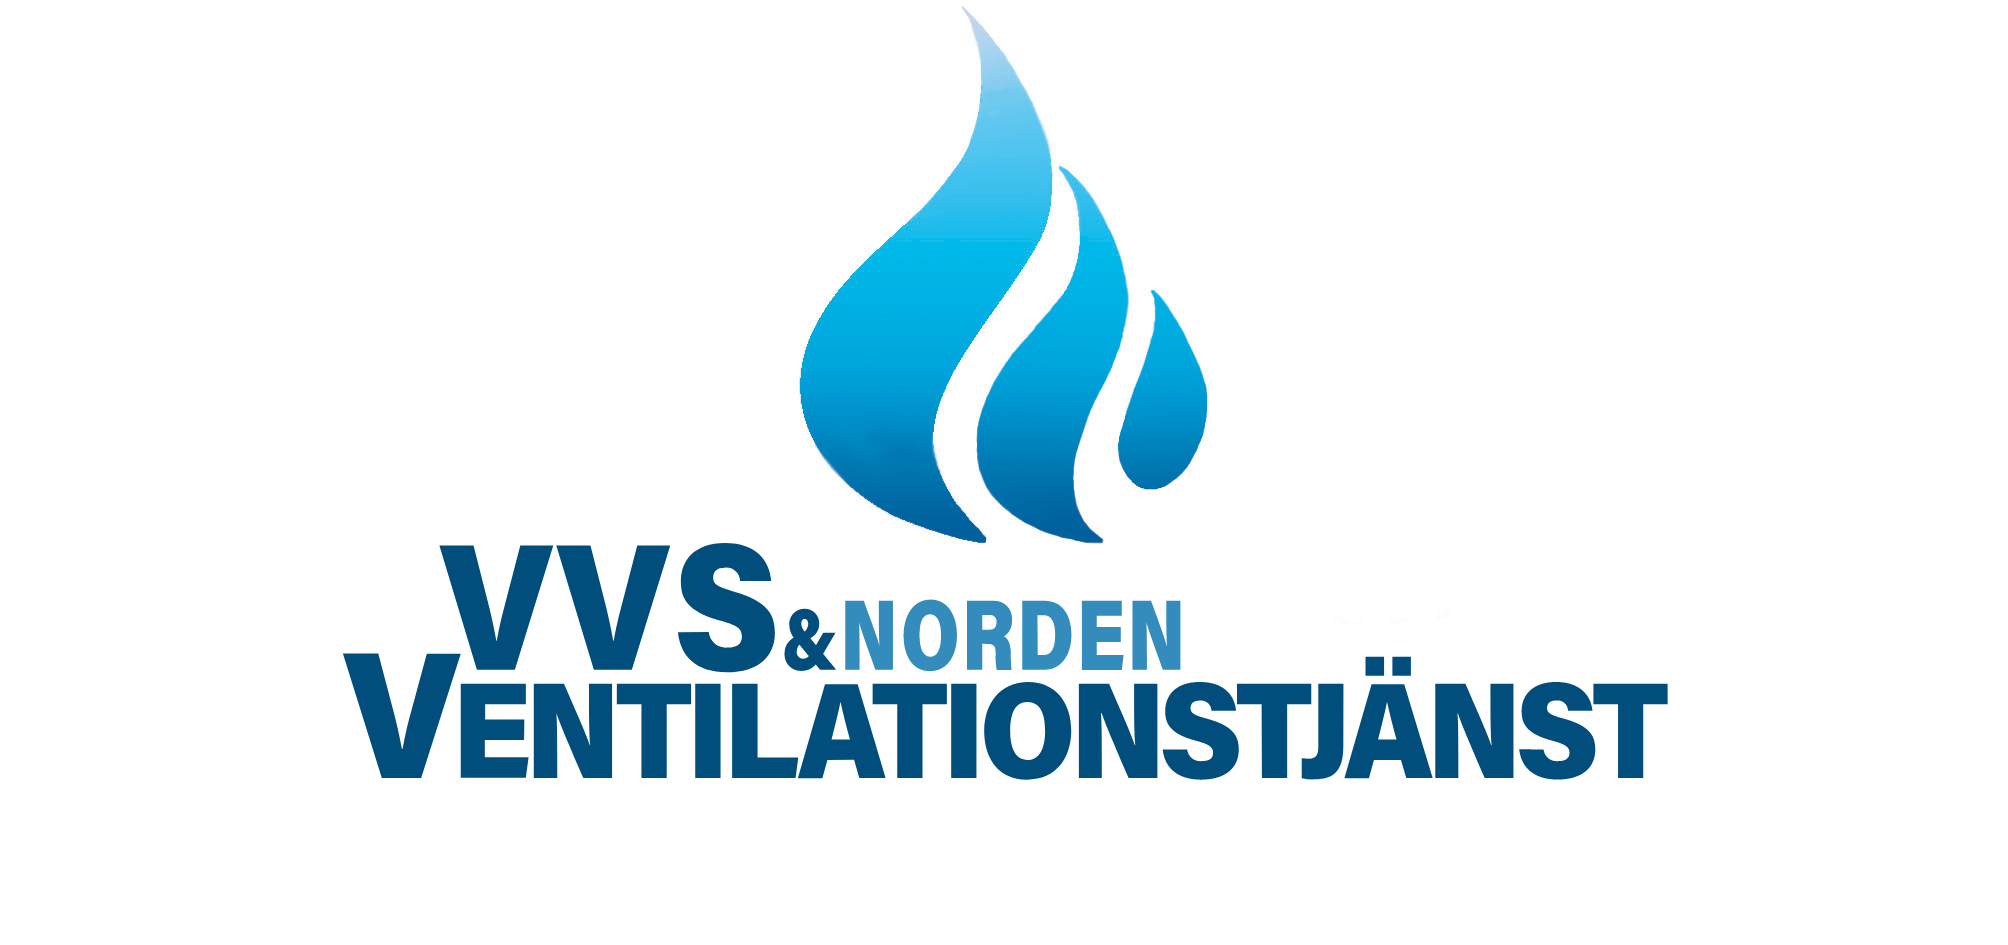 VVS och Ventilationstjänst Norden 24/7 Spoljour, Rörmokare och sotning i Stockholm och närområden